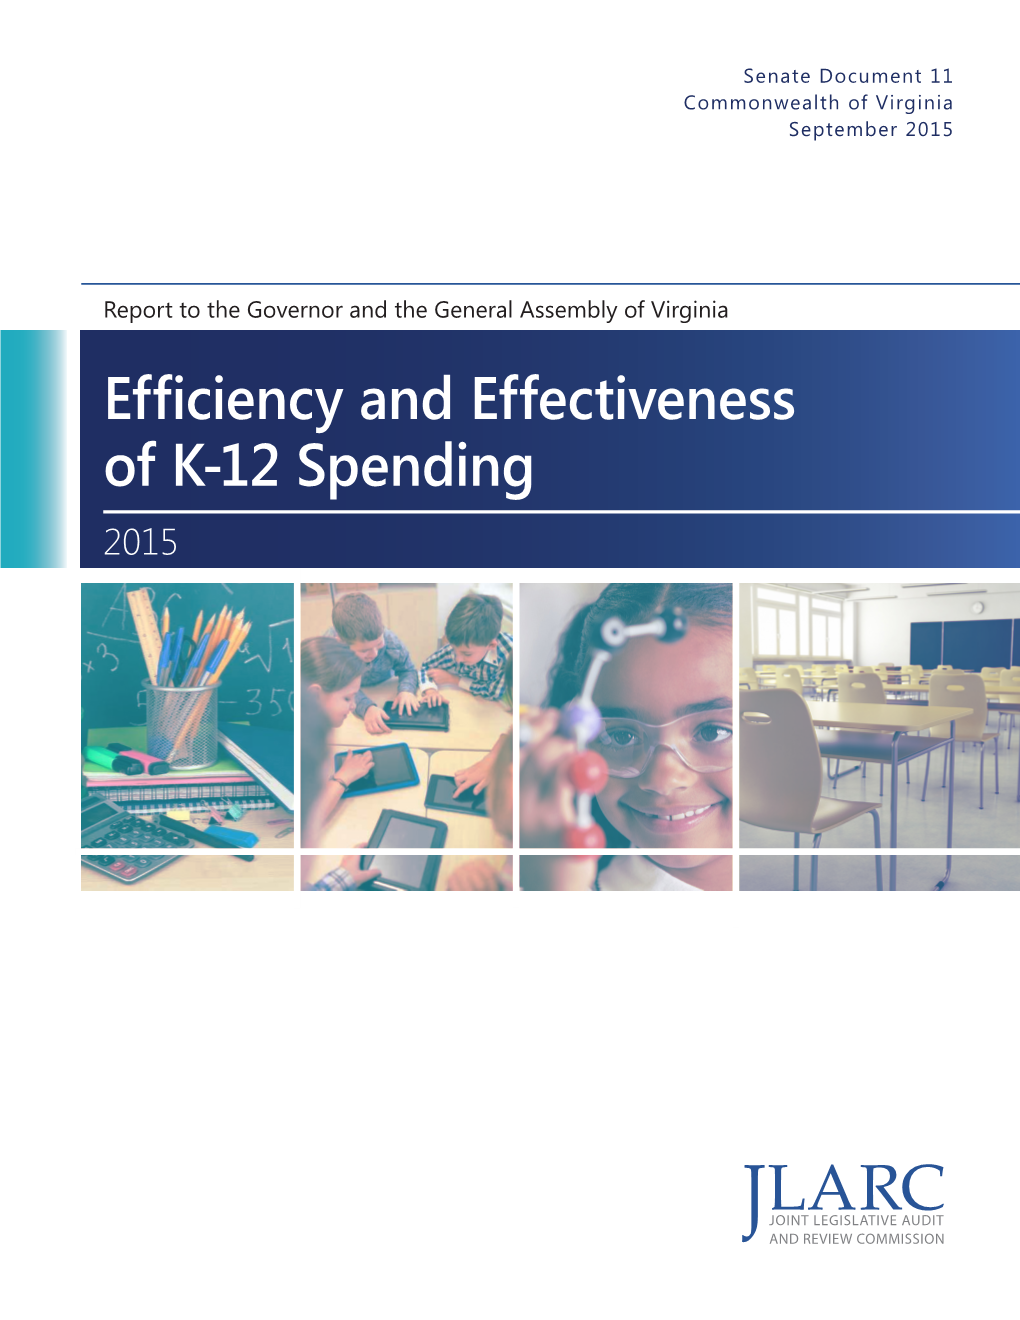 Efficiency and Effectiveness of K-12 Spending 2015